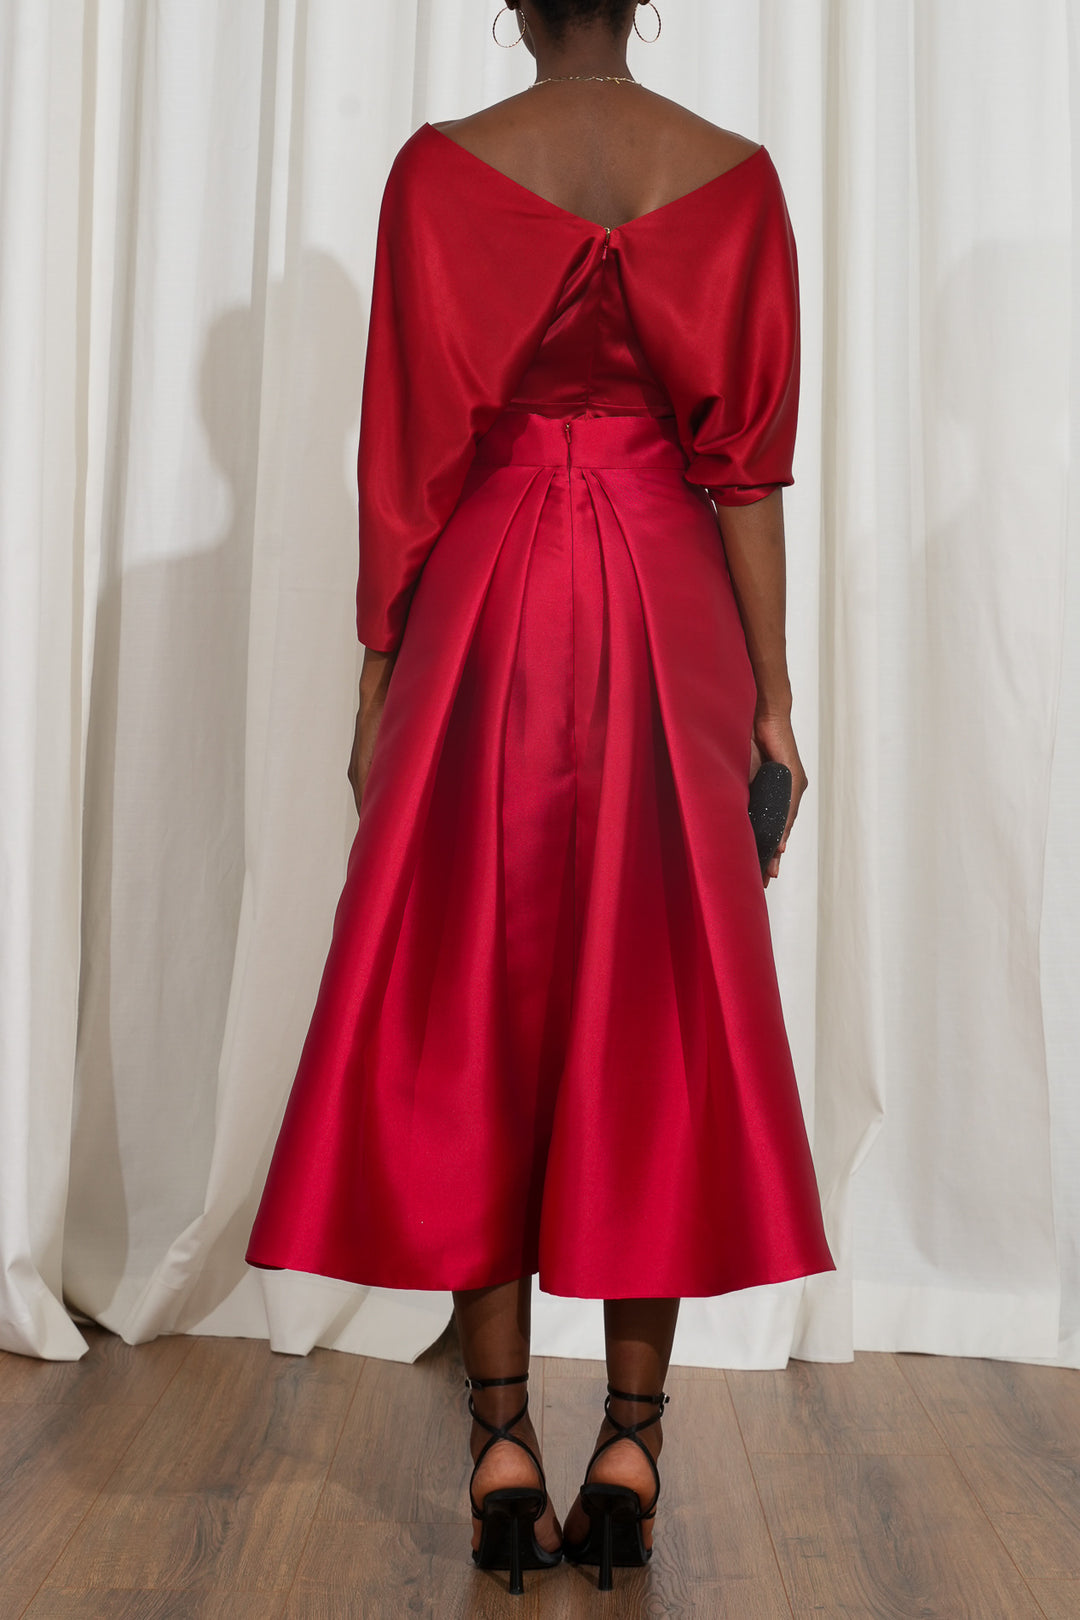 Jasmine Structured True Red Mikado Skirt